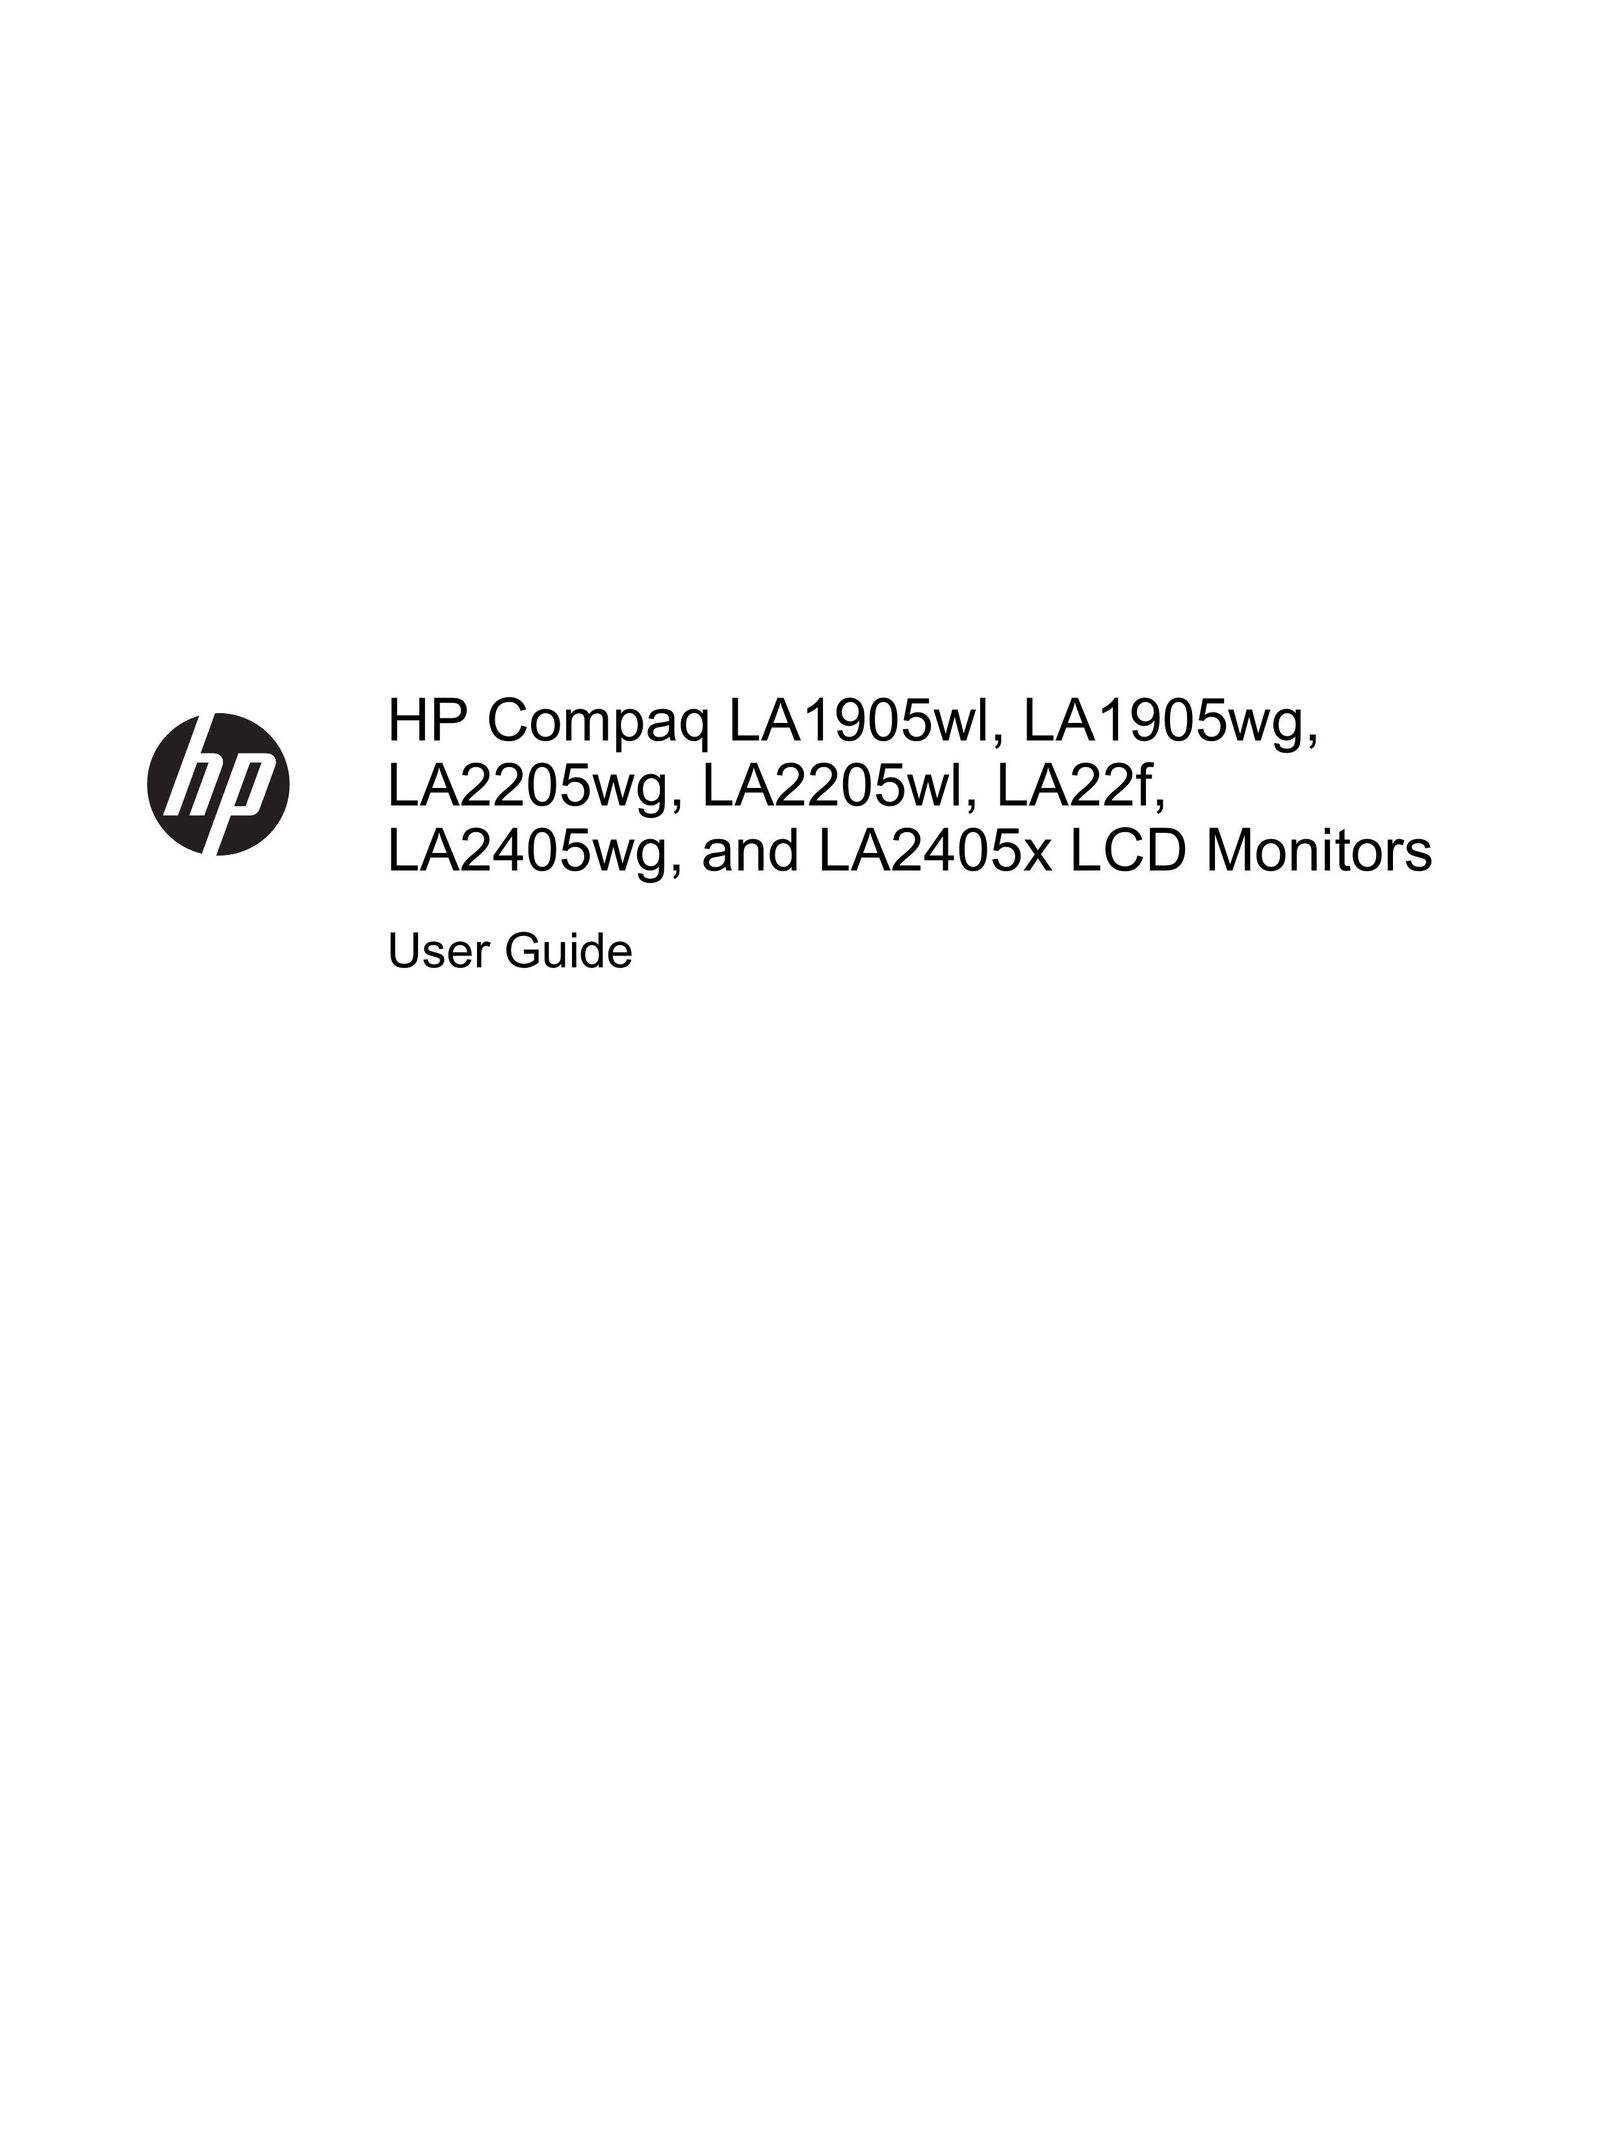 HP (Hewlett-Packard) LA1905WL Car Video System User Manual